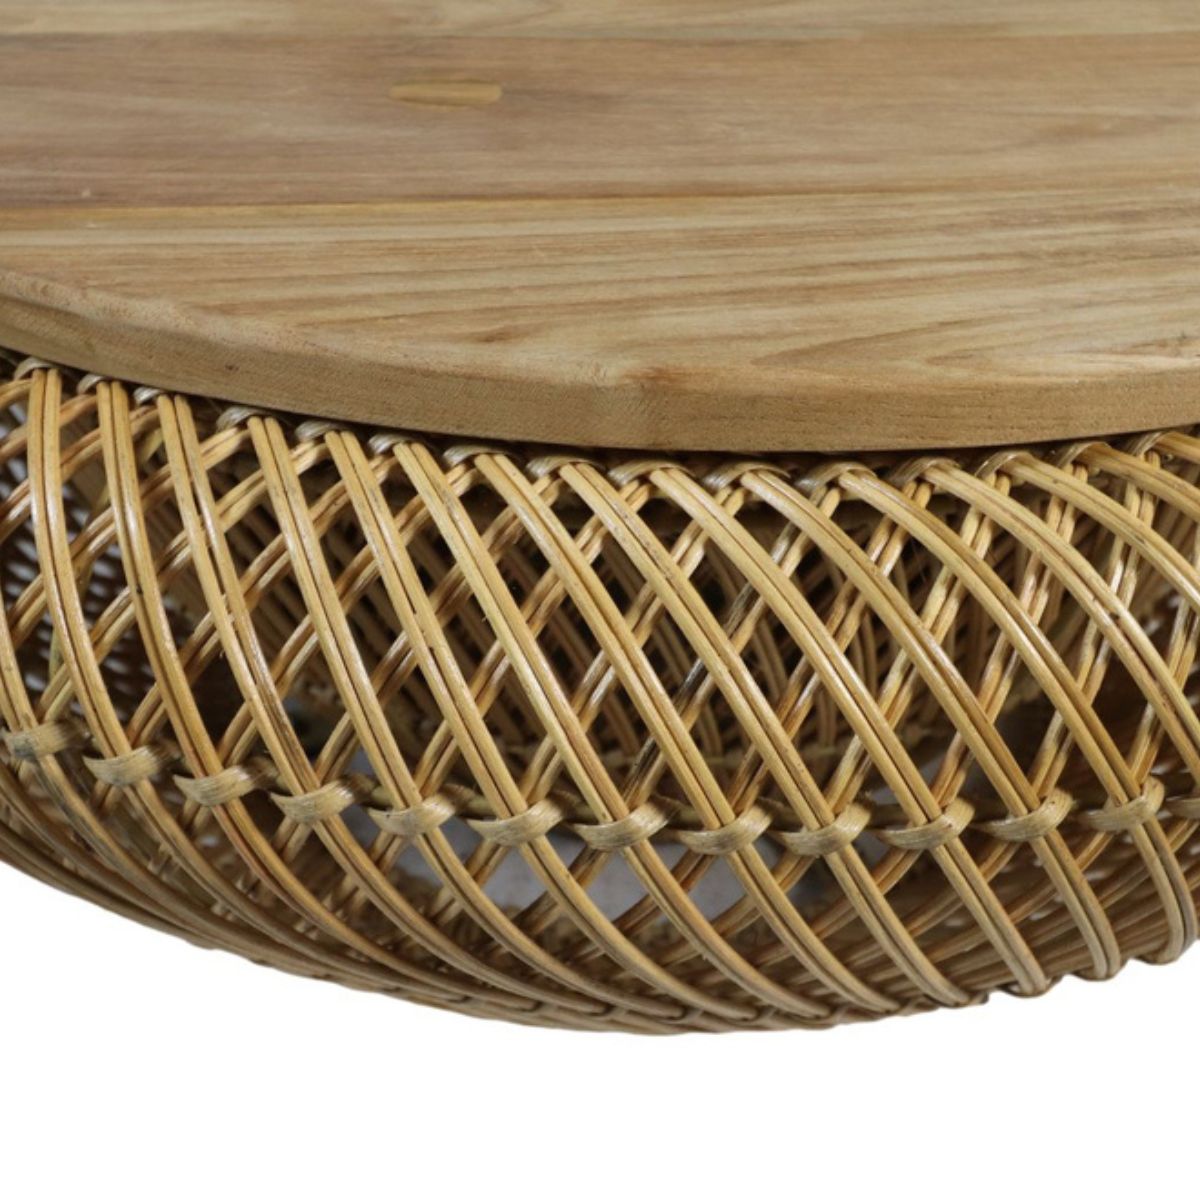 Ontdek het functionele en stijlvolle design van onze salontafel met opklapbare houten plaat. Voeg een vleugje moderniteit toe aan je interieur en geniet van het praktische gebruik in je dagelijks leven.